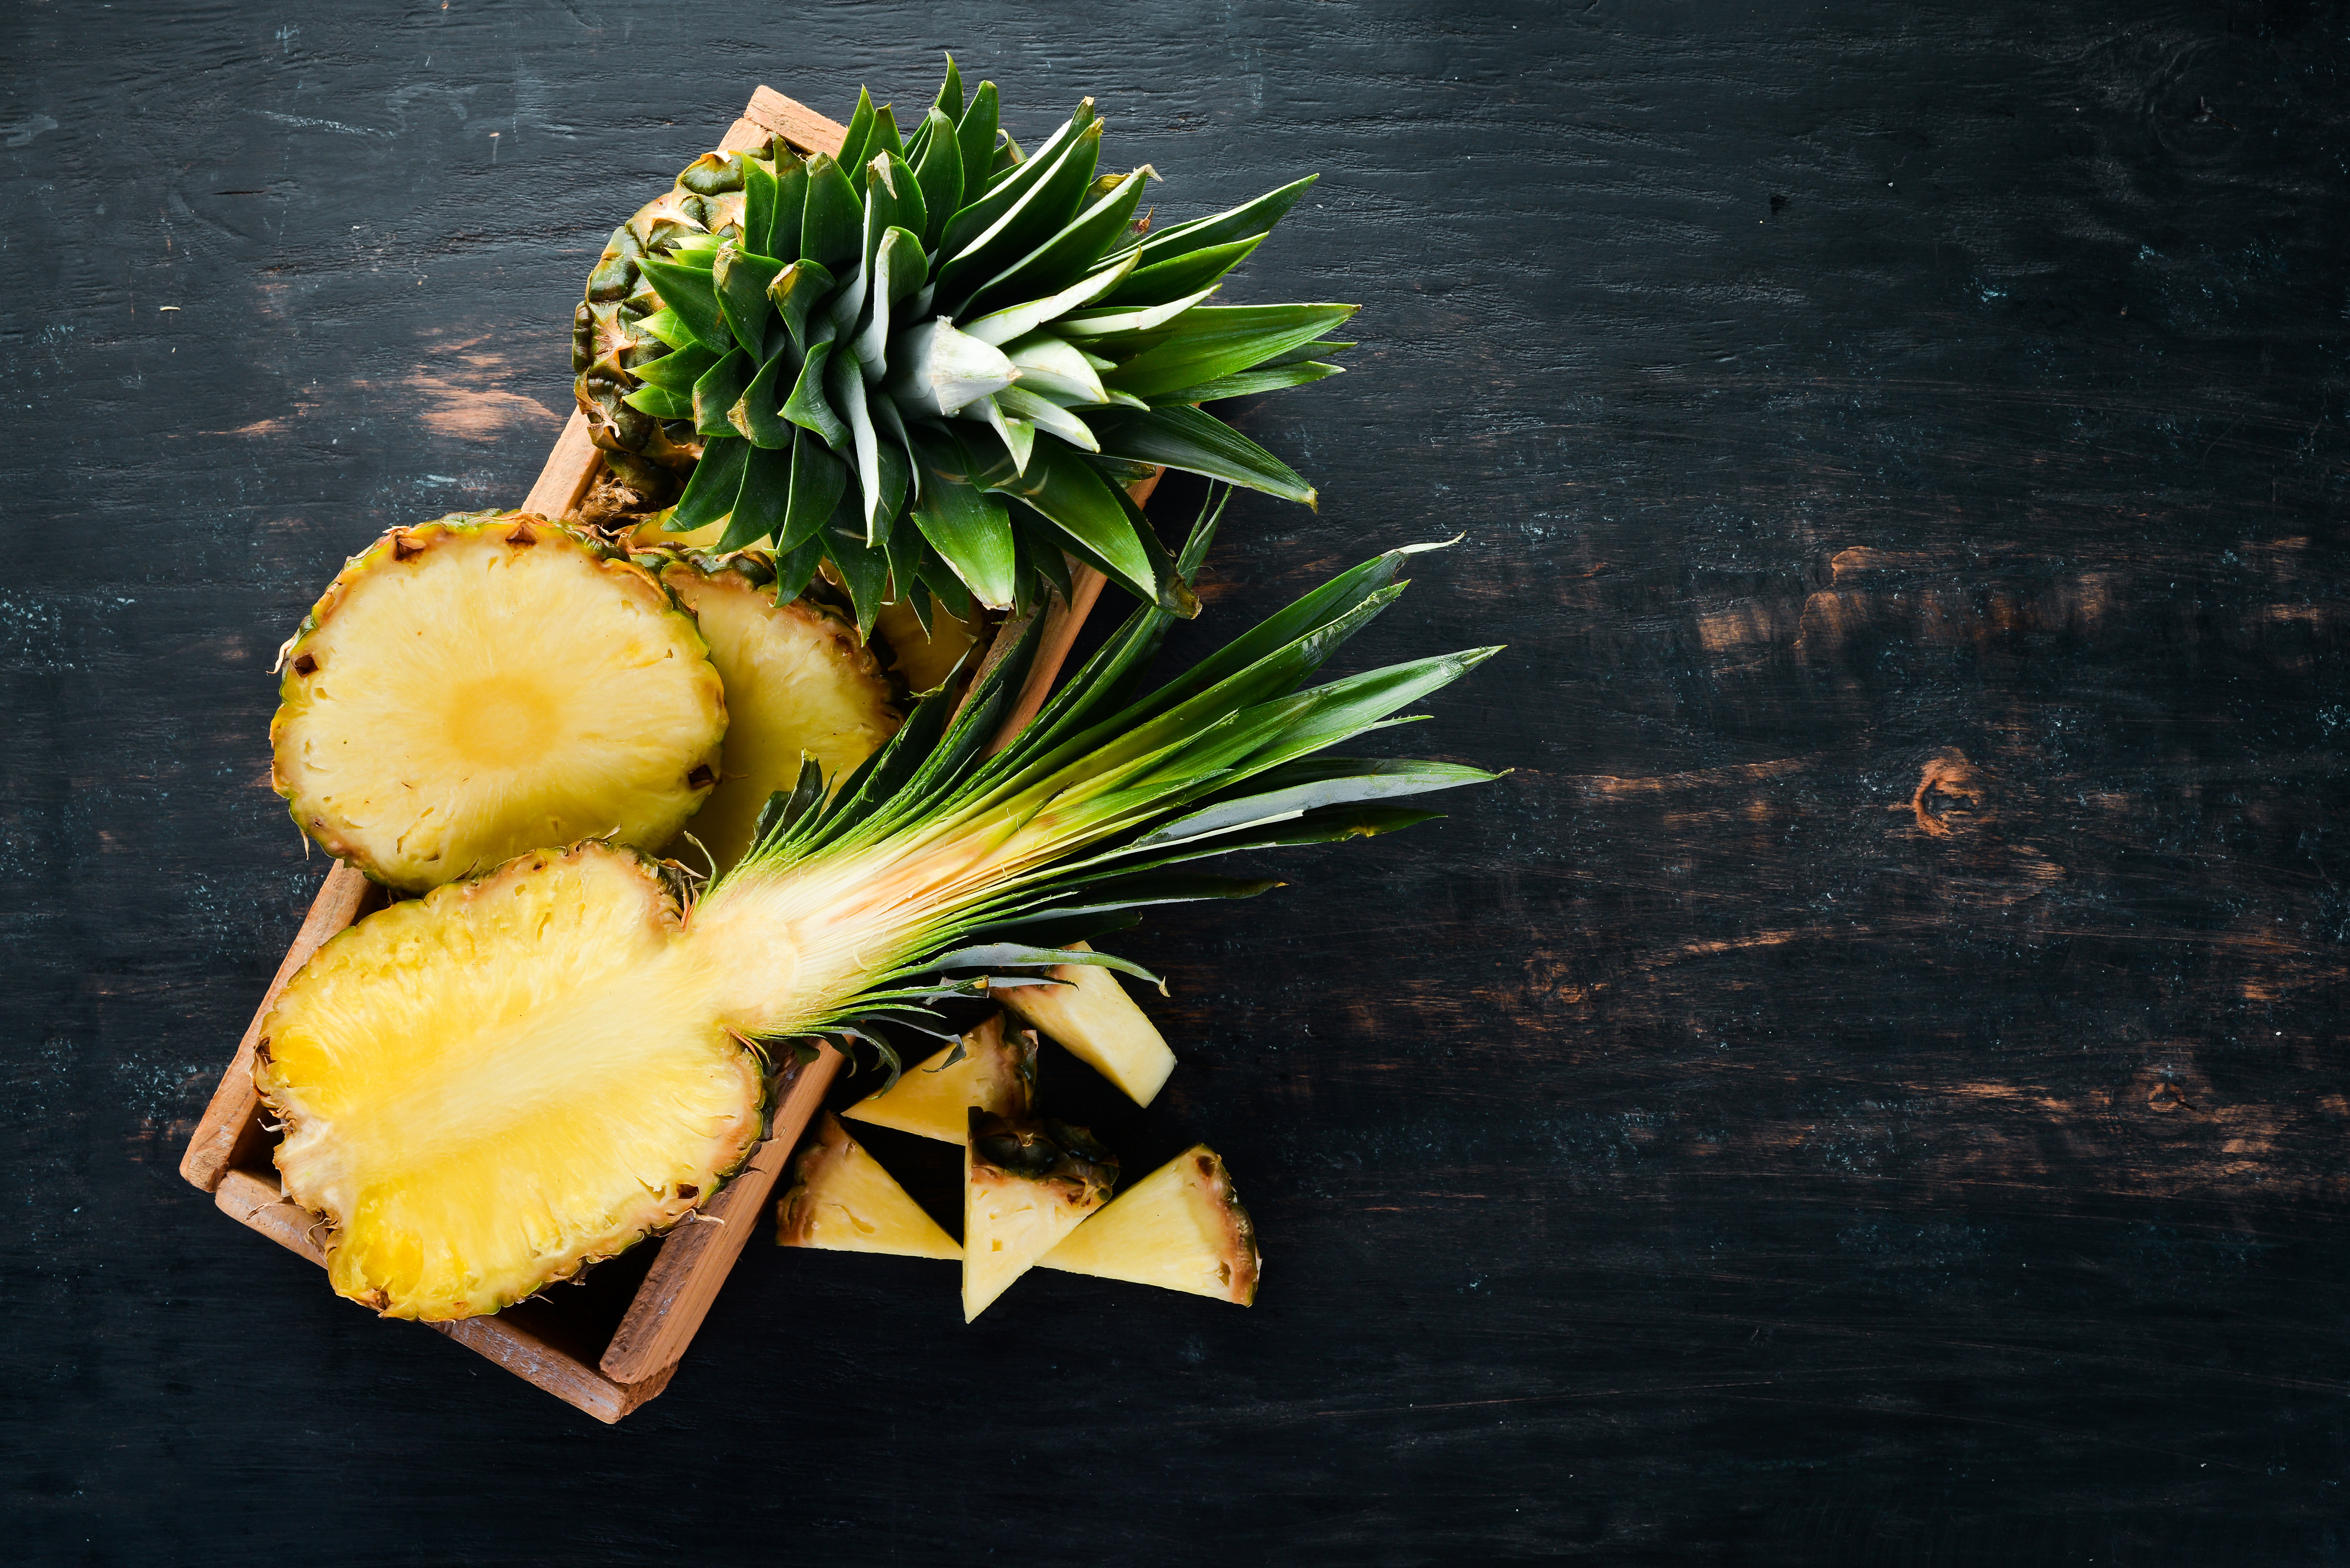  Ananas, perché fa bene? Tutti i benefici sull'organismo 